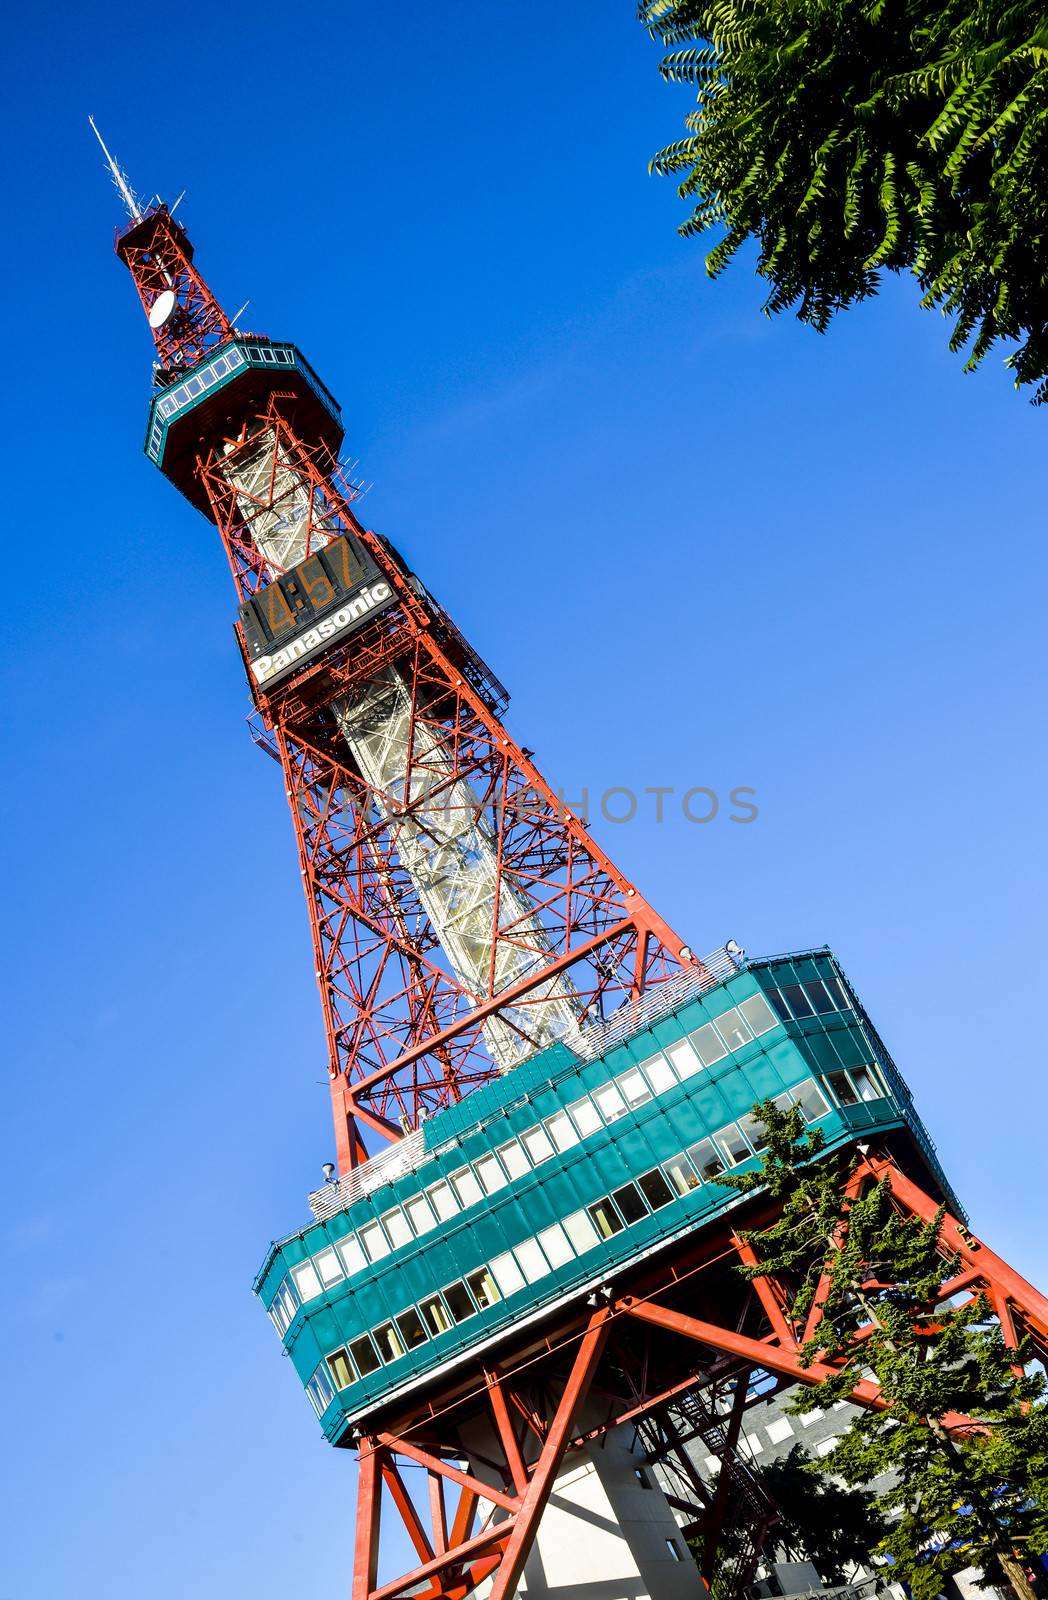 Sapporo TV Tower in Sapporo Japan1 by gjeerawut